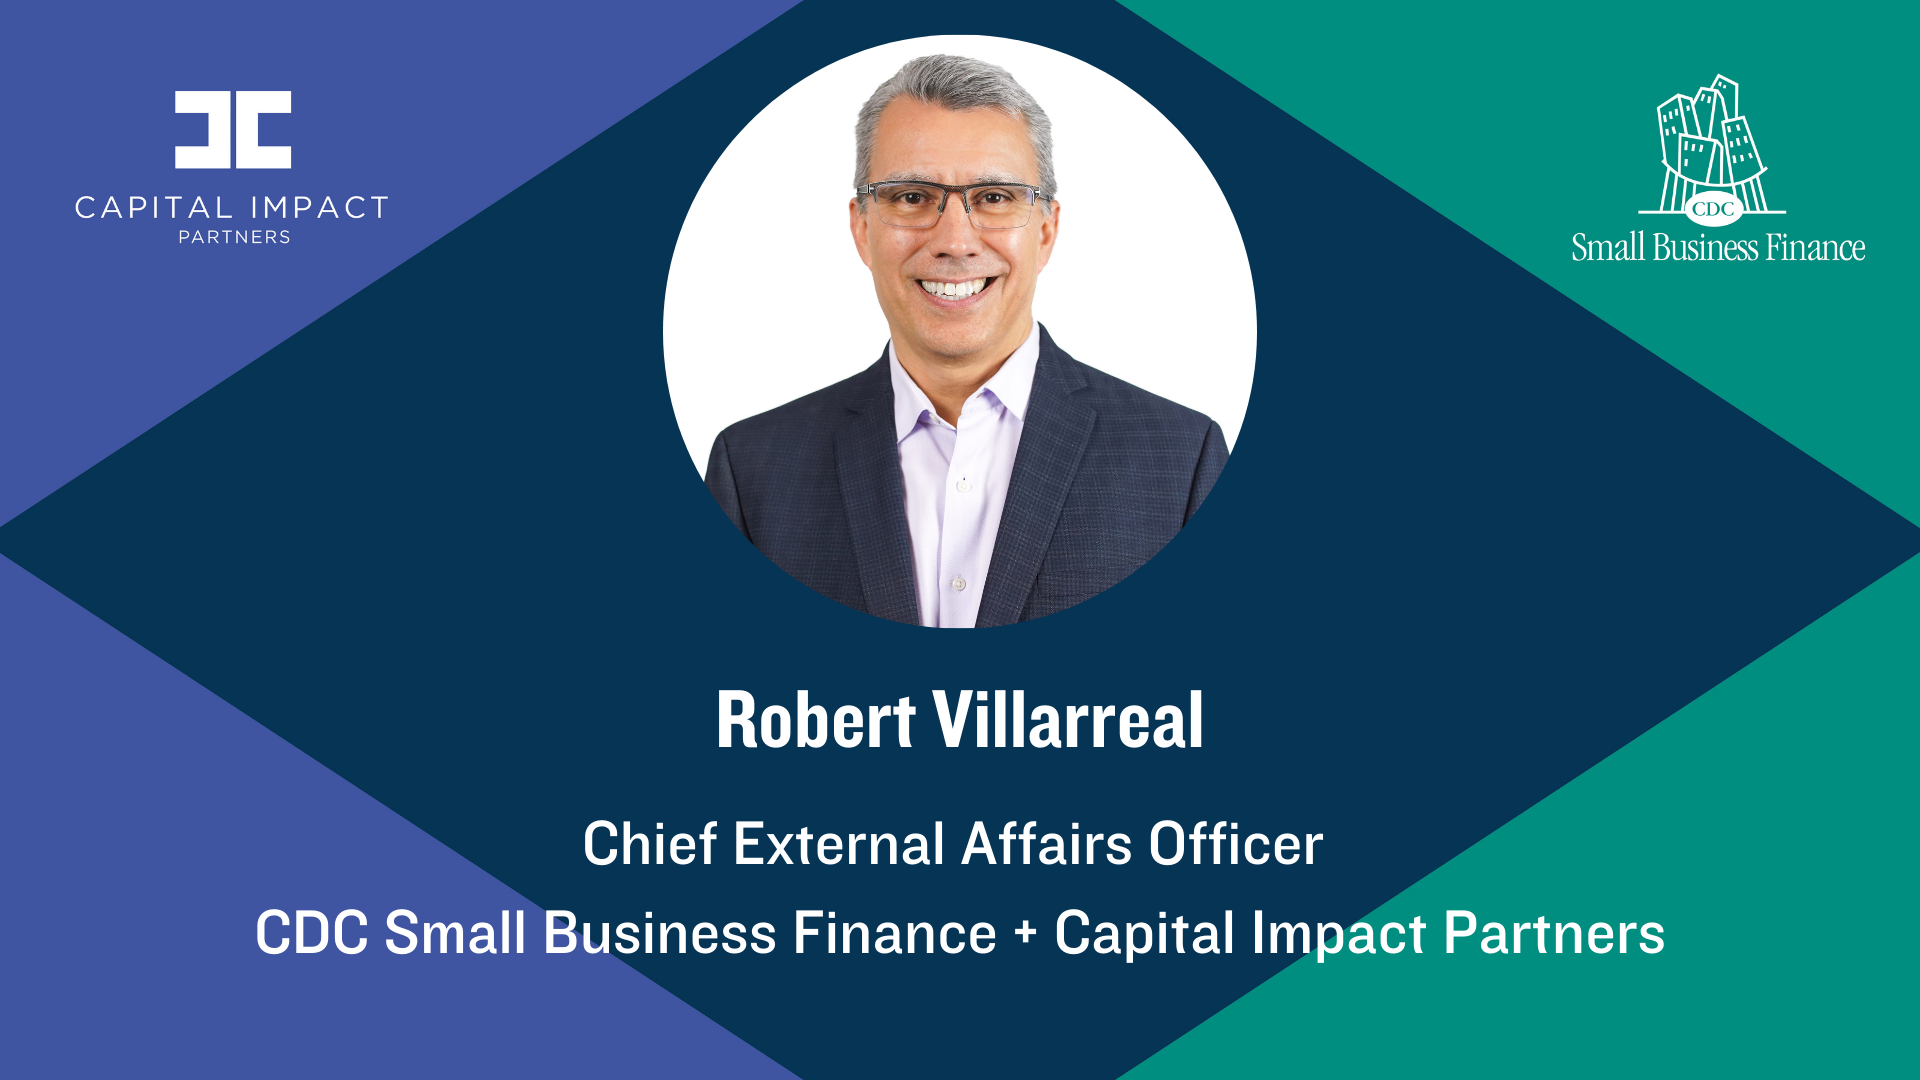 Robert Villarreal, Chief External Affairs Officer